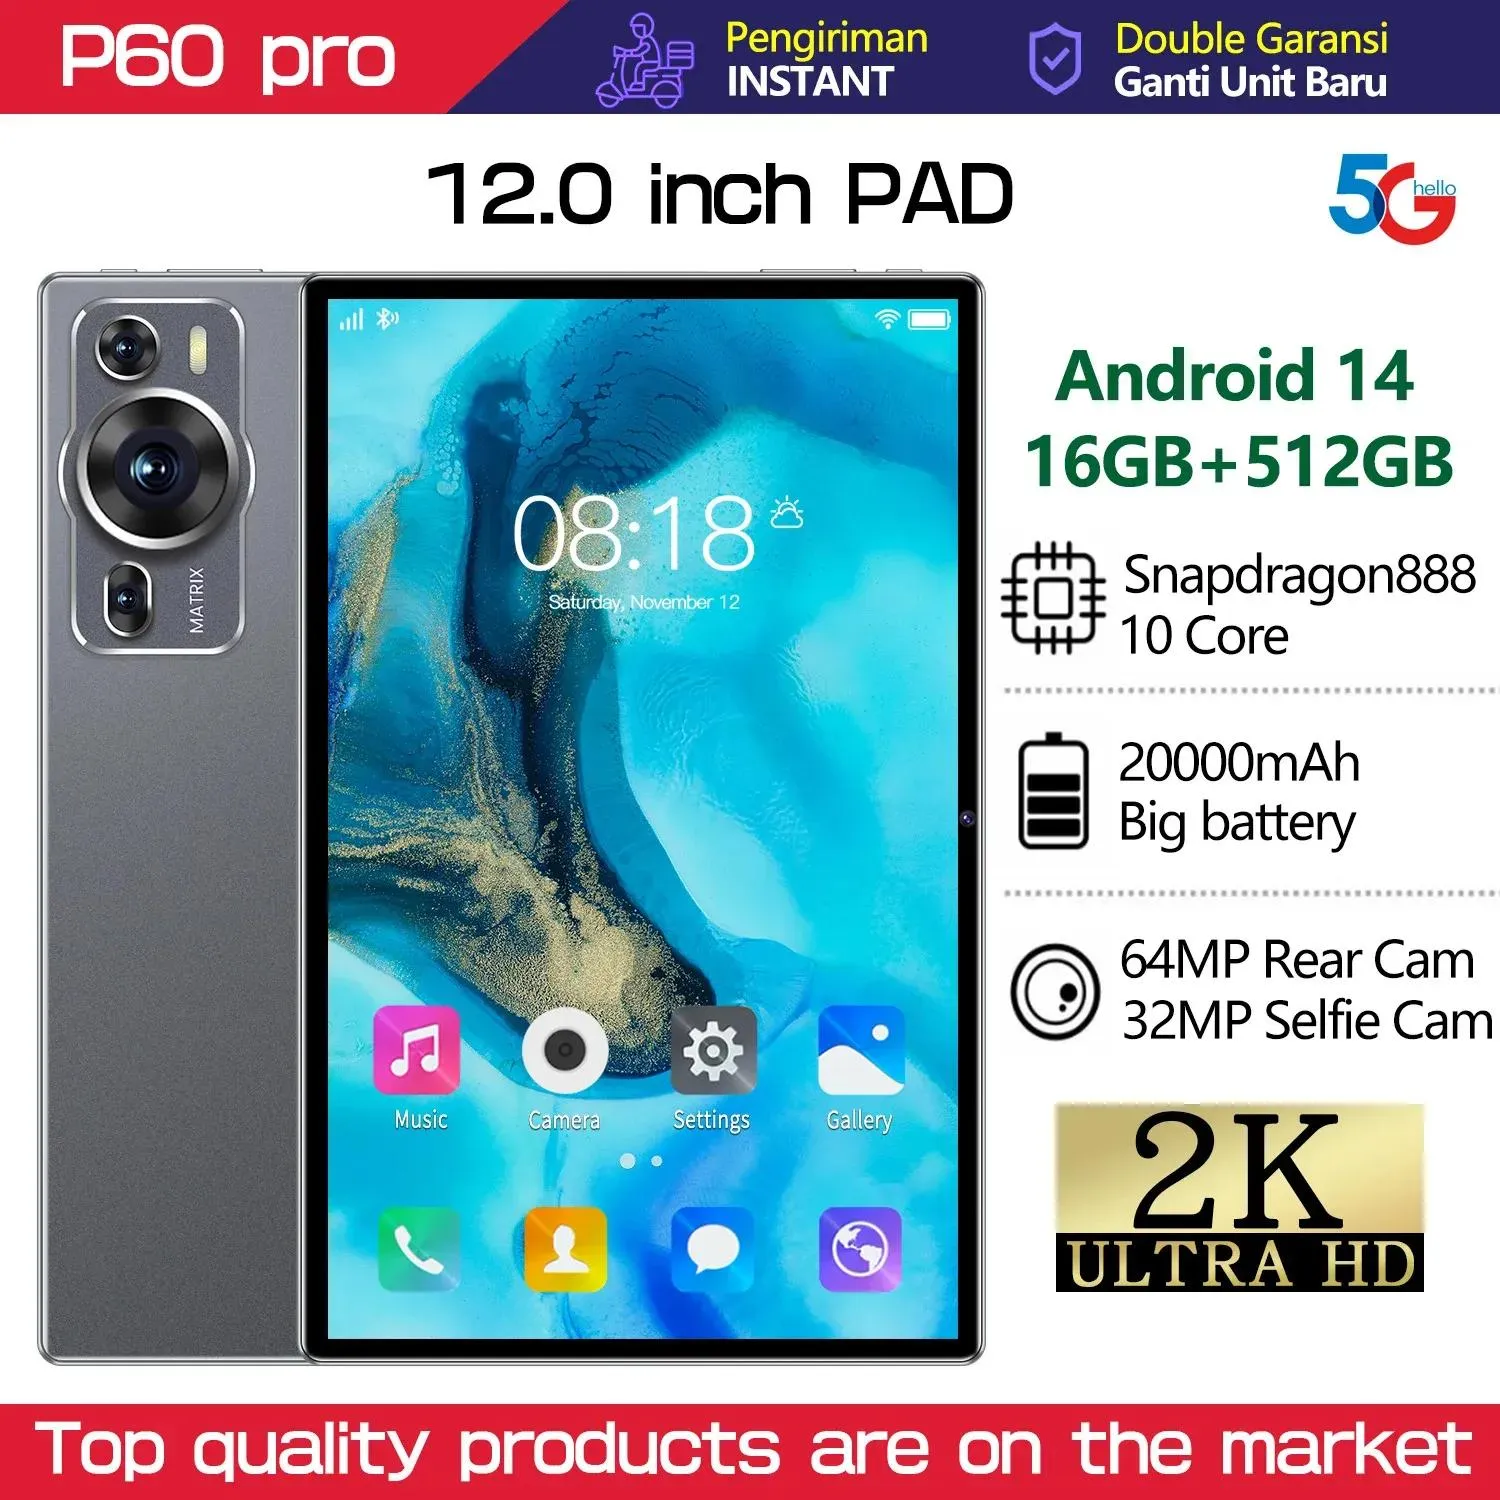 ブランドPCタッチタブレットAndroid P60 Proグローバルタブレット12.0インチHD 16G+512GB Snapdragon 888 5GデュアルSIMカードまたはWiFi Google Play TE